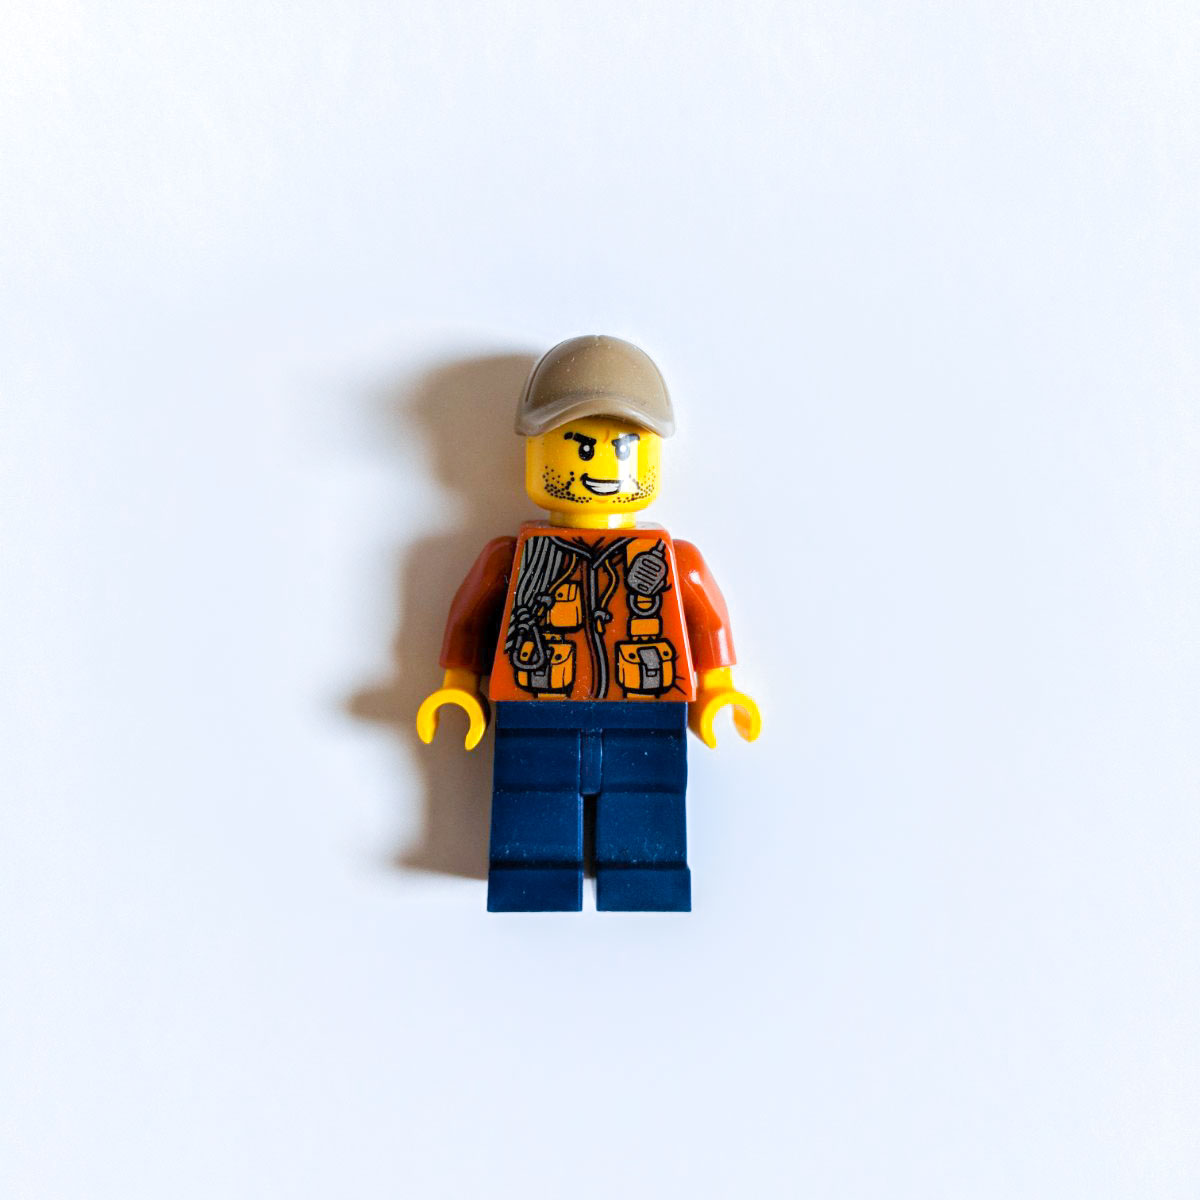 LegoPiece0002